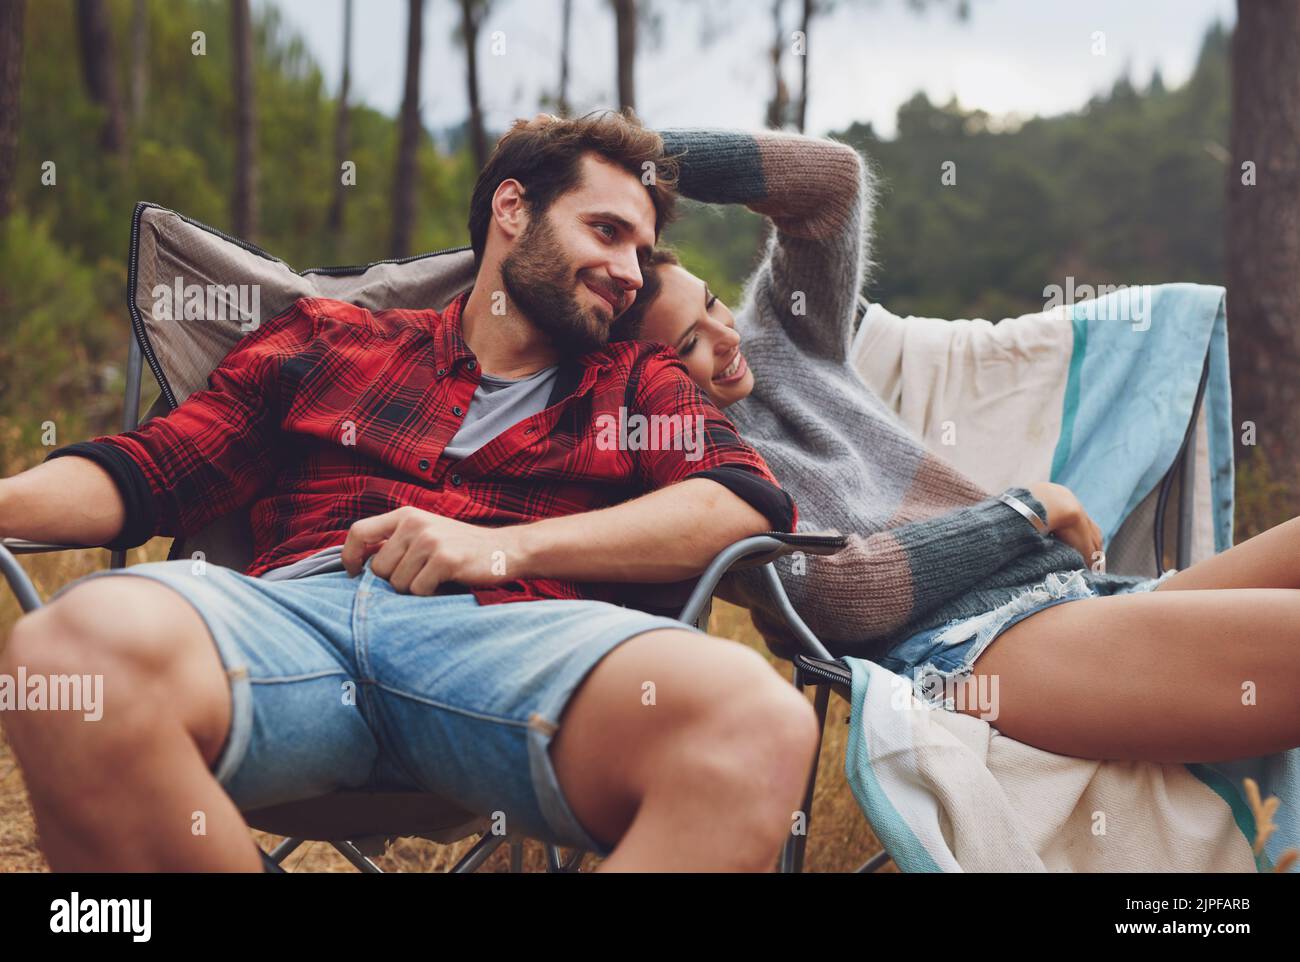 Liebevolles junges Paar, das auf einem Stuhl auf ihrem Campingplatz sitzt. Glücklicher junger Mann und Frau, die in der Natur campen. Stockfoto